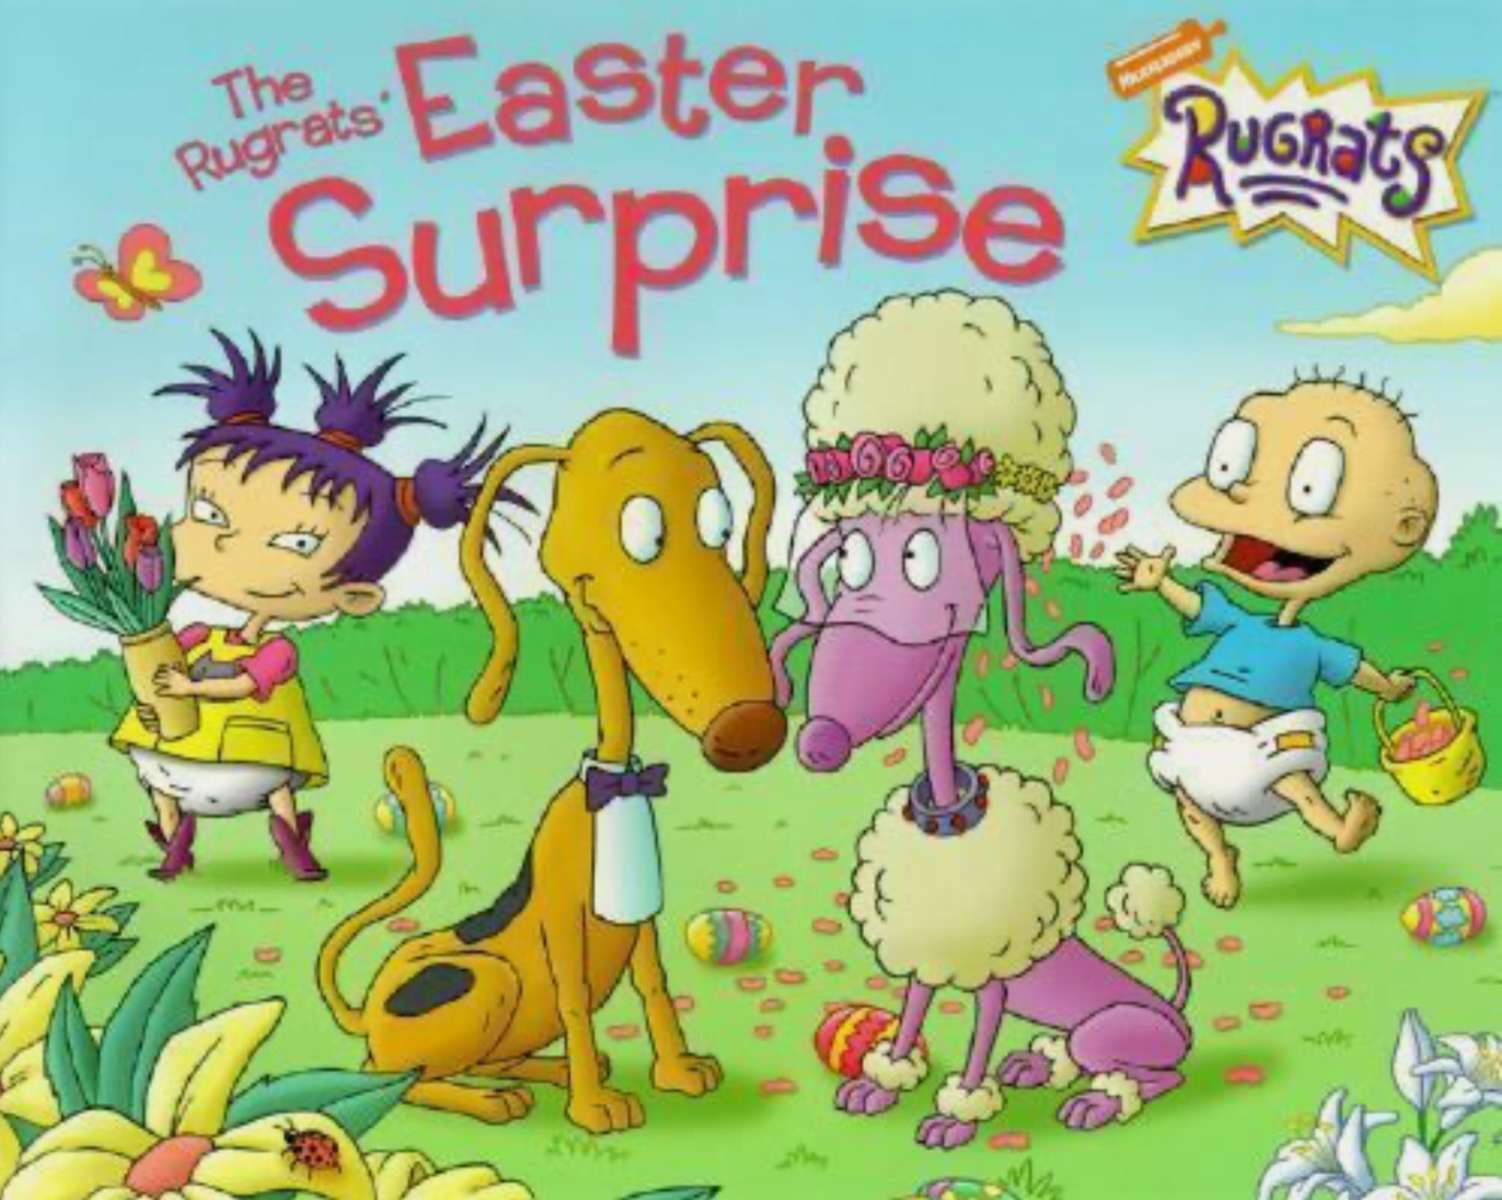 La sorpresa di Pasqua dei Rugrats (libro tascabile) puzzle online